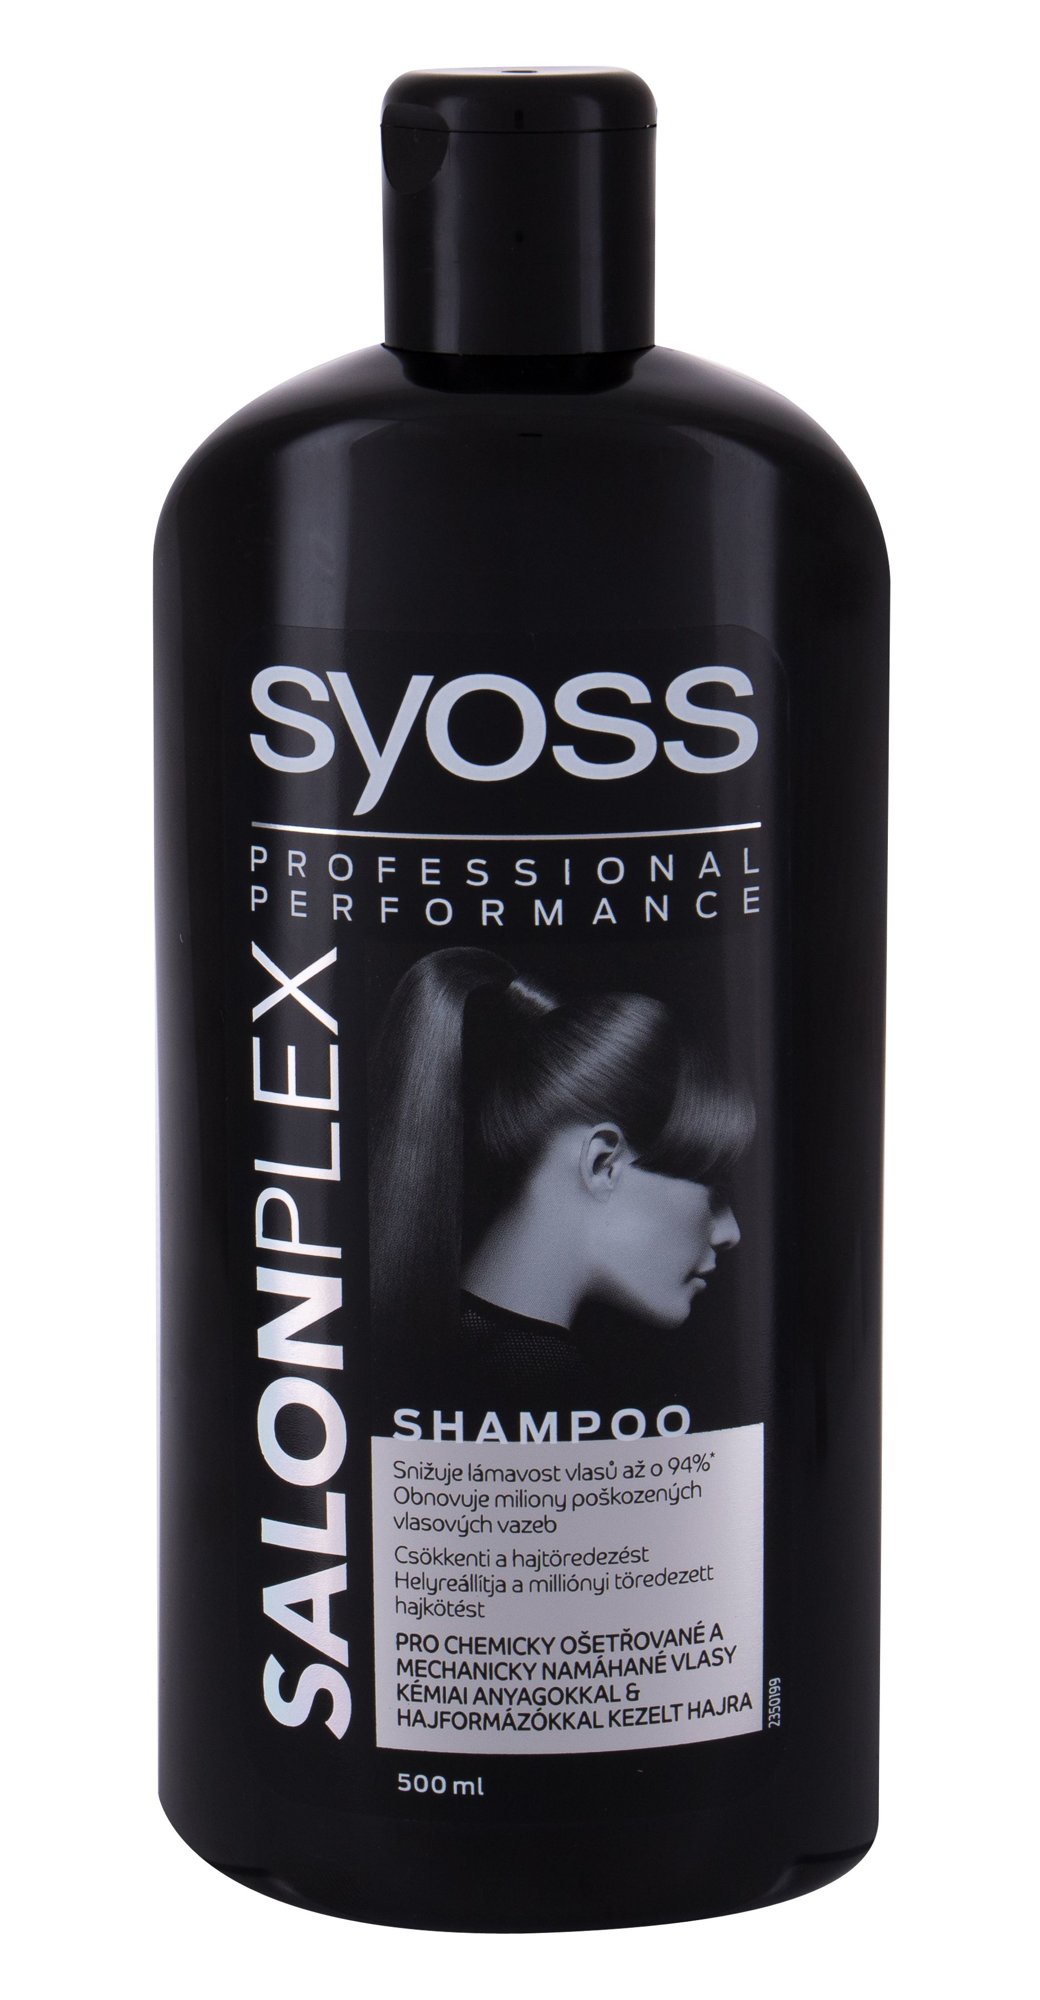 Syoss Professional Performance SalonPlex šampūnas